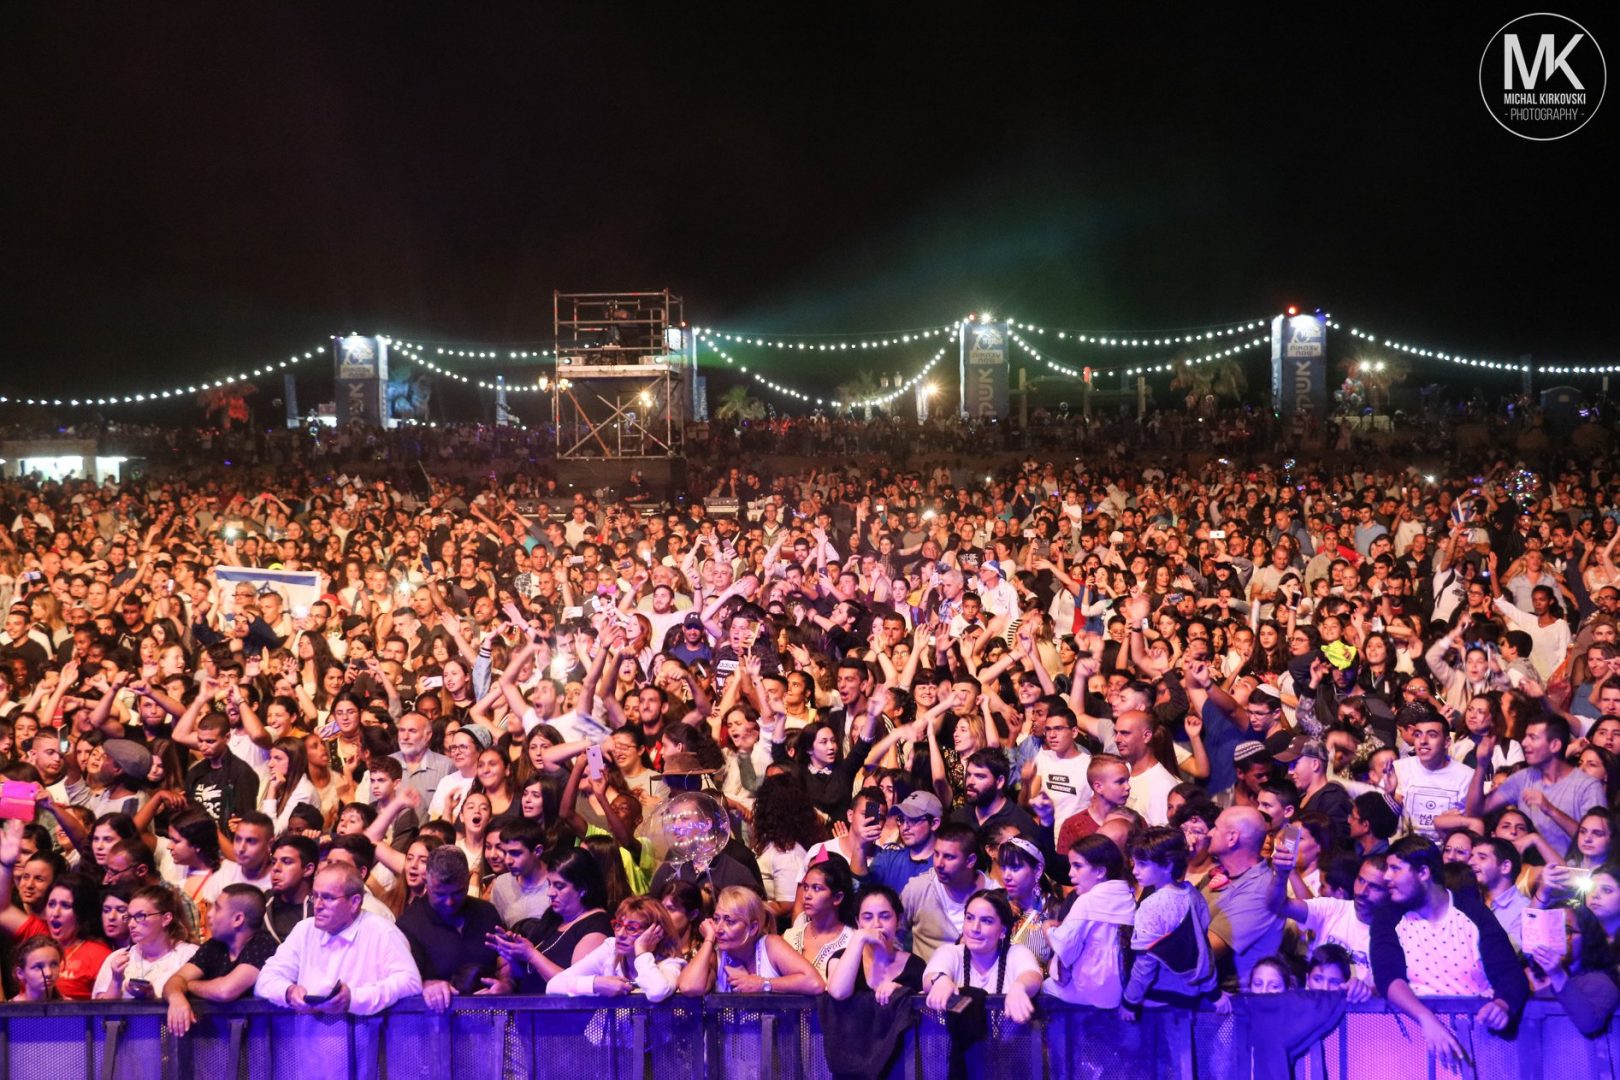 כ-30 אלף תושבים בחגיגות יום העצמאות למדינת ישראל